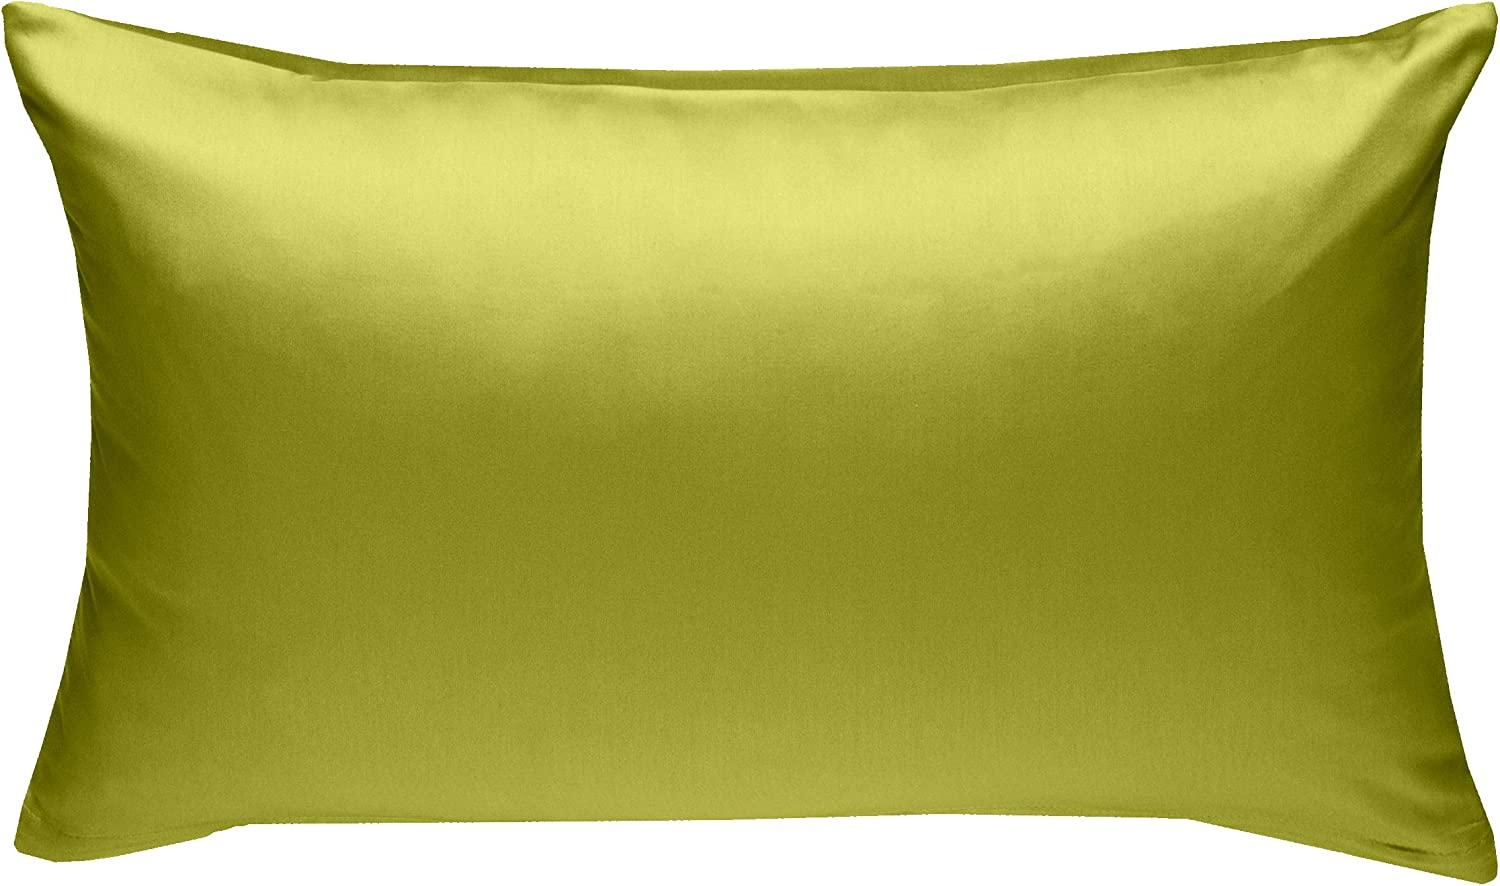 Bettwaesche-mit-Stil Mako-Satin / Baumwollsatin Bettwäsche uni / einfarbig grün Kissenbezug 40x60 cm Bild 1